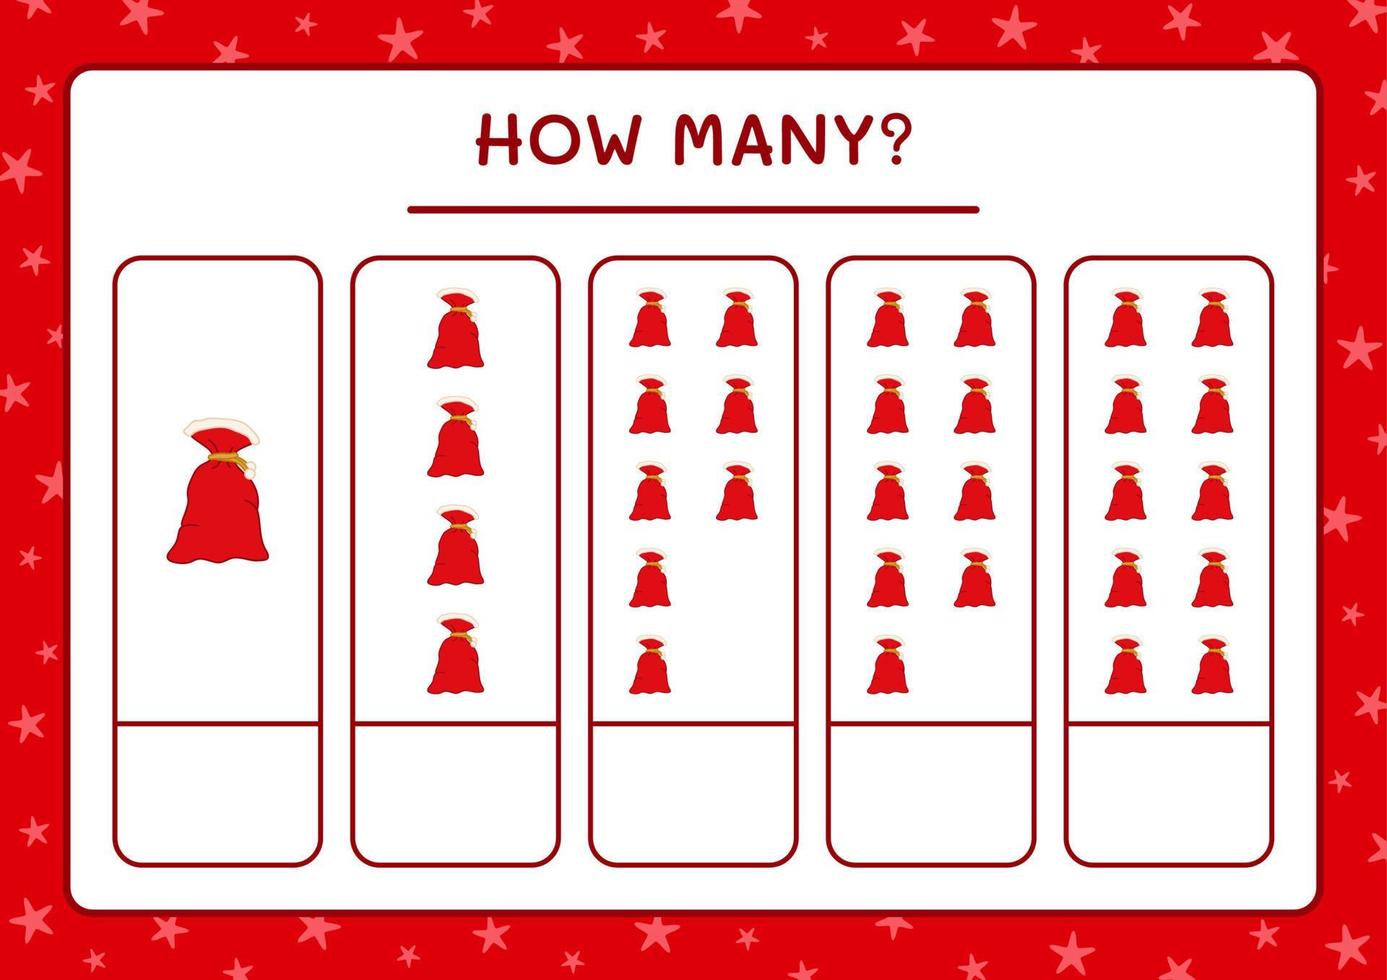 hur många jultomten röd väska, spel för barn. vektor illustration, utskrivbart kalkylblad